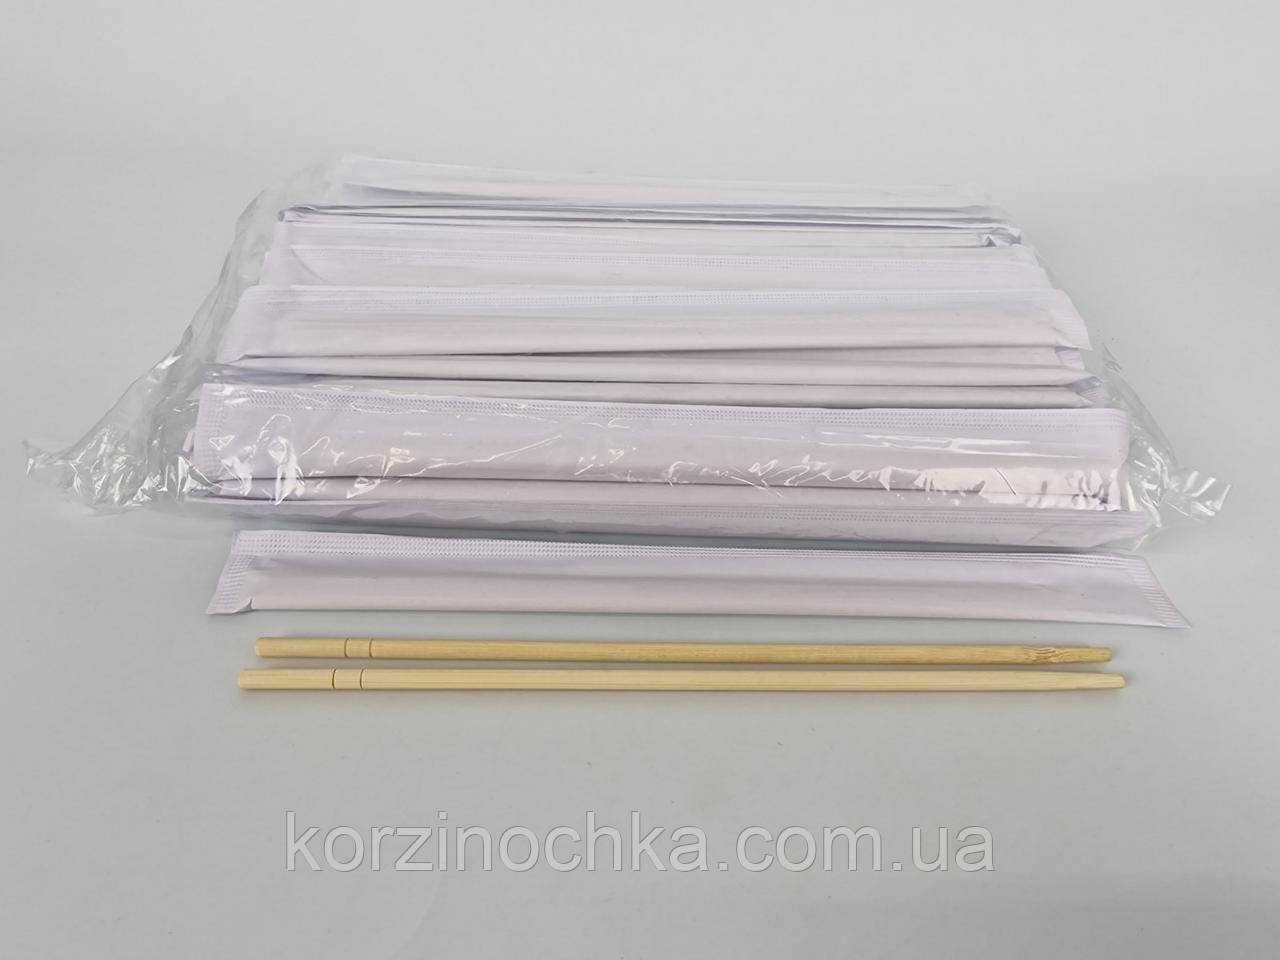 Палички для Суші бамбукові 225 мм Ø5 мм(100 шт)(1 пач)палочки в паперовій індивідуальній упаковці